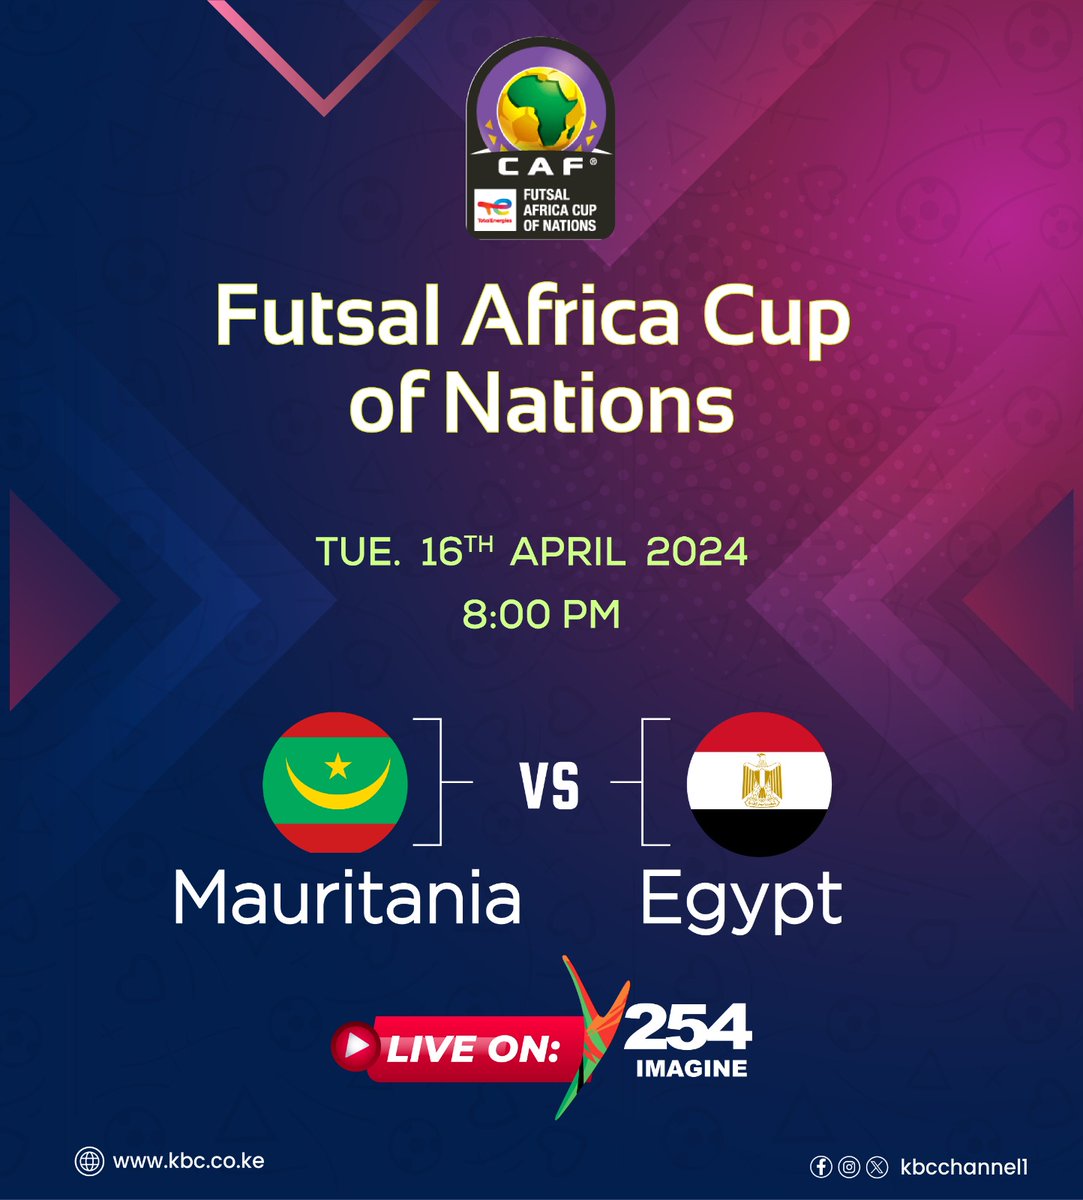 Futsal Africa Cup of Nations. LIVE ON Y254. Mauritania Vs Egypt 8:00PM. ^DA #KBCniYetu